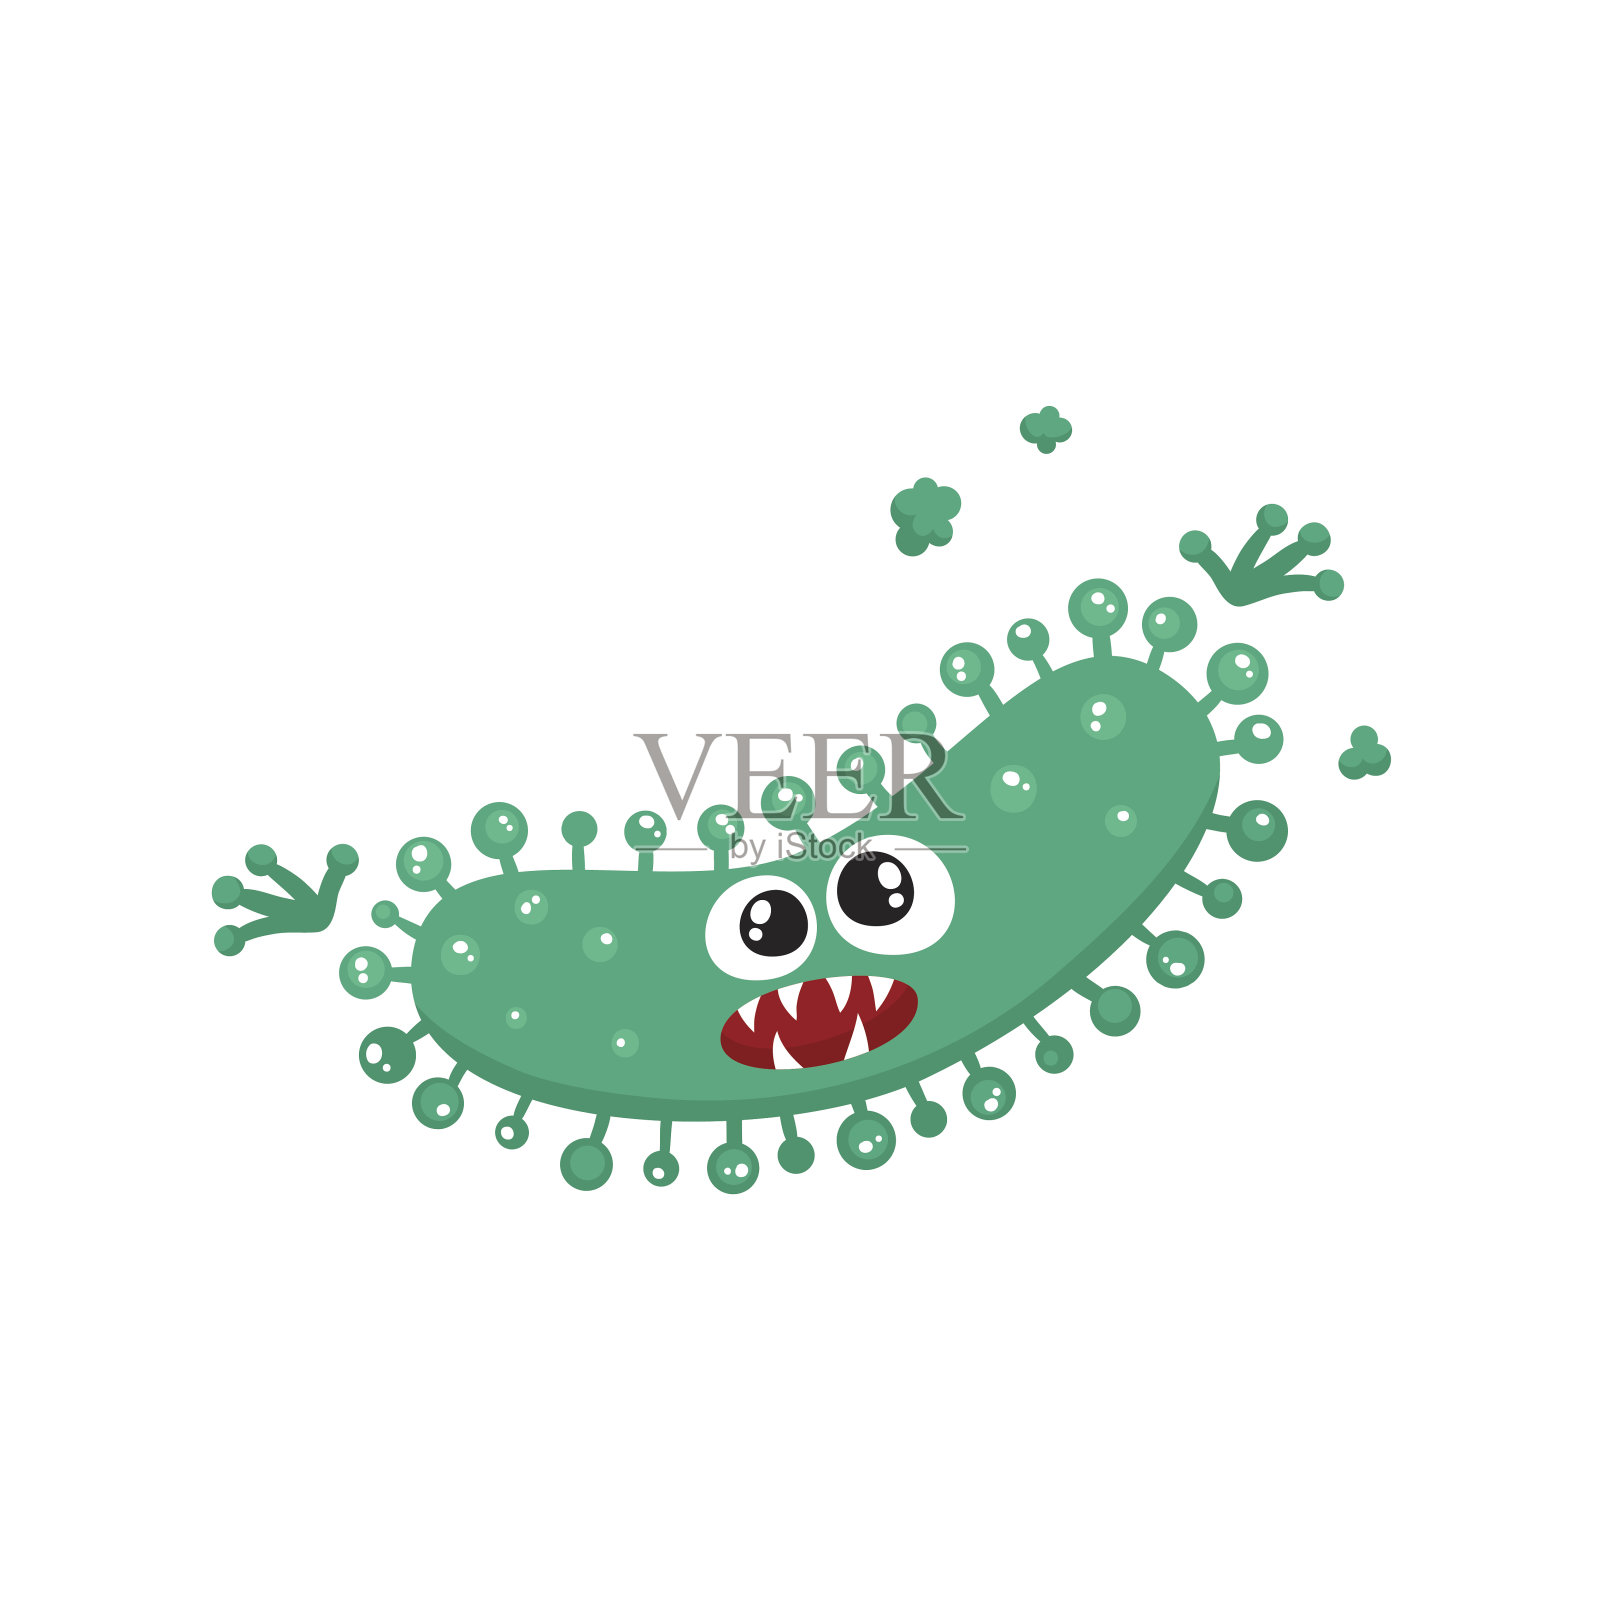 丑陋的绿色病毒、细菌、细菌具有人类面孔的特征插画图片素材